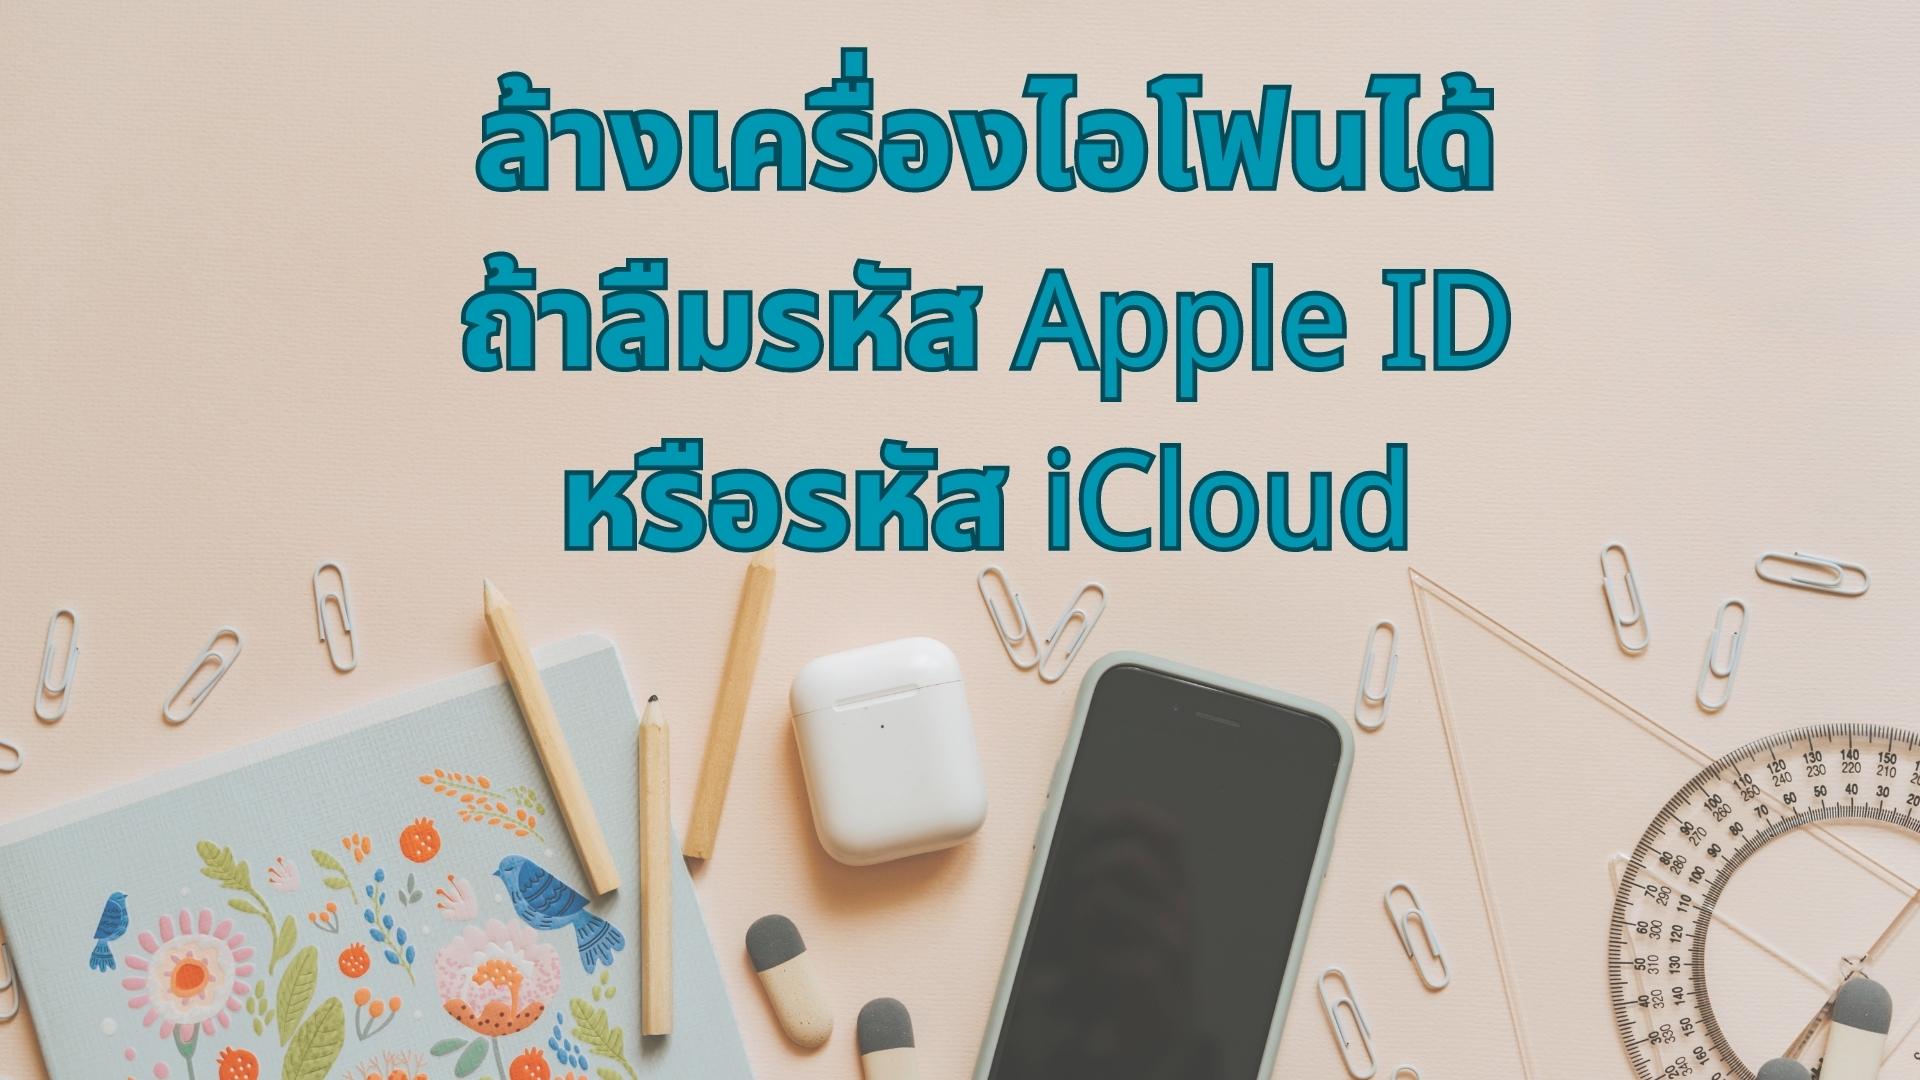 【 2567  ล่าสุด】 ล้างเครื่องไอโฟนได้ ถ้าลืมรหัส Apple ID หรือรหัส iCloud